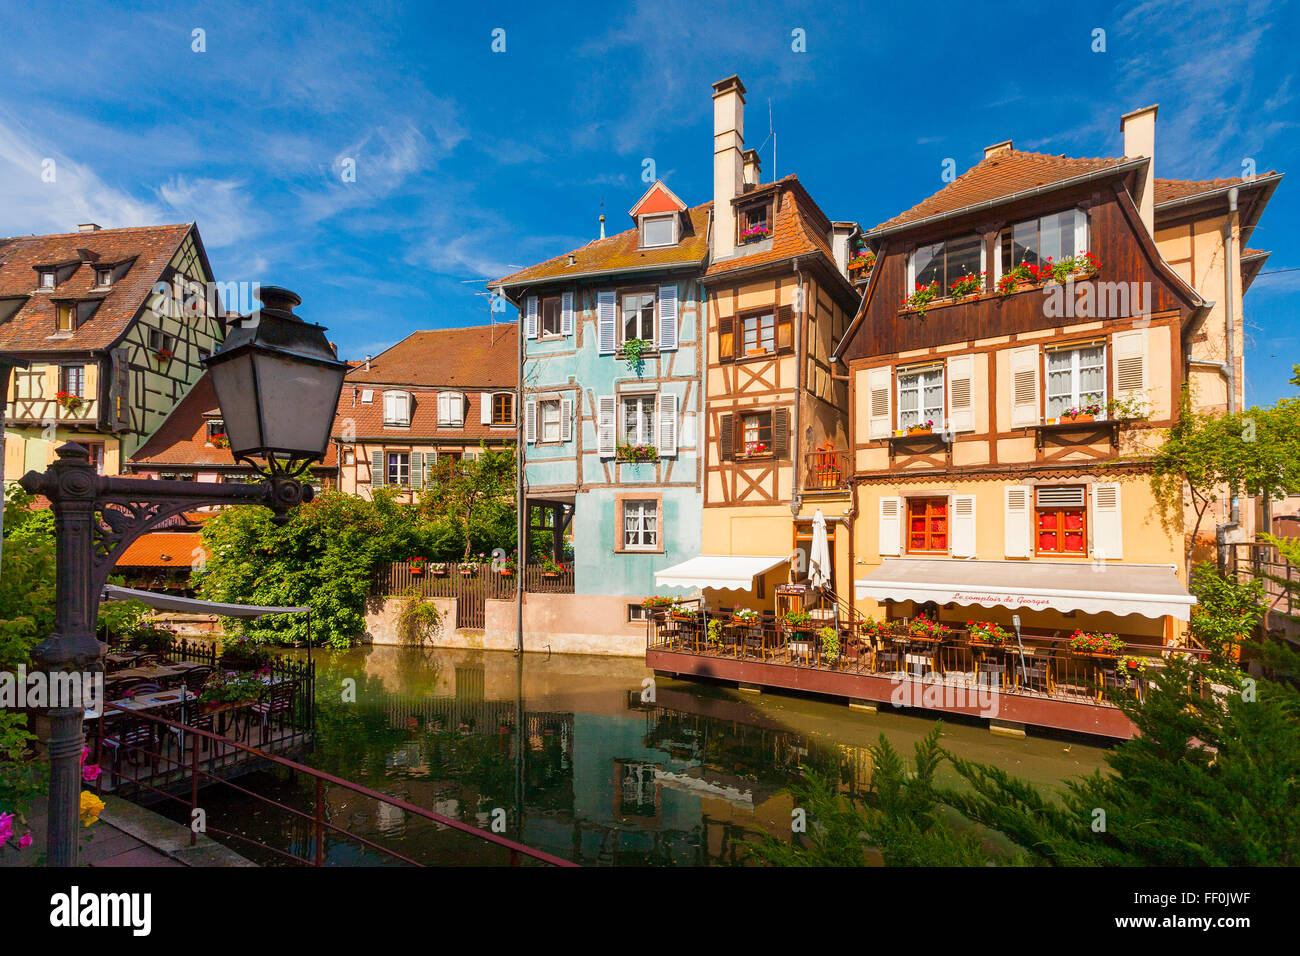 View of La Petite Venise or Little Venice, district, Old Town, Colmar, Alsace, France Stock Photo